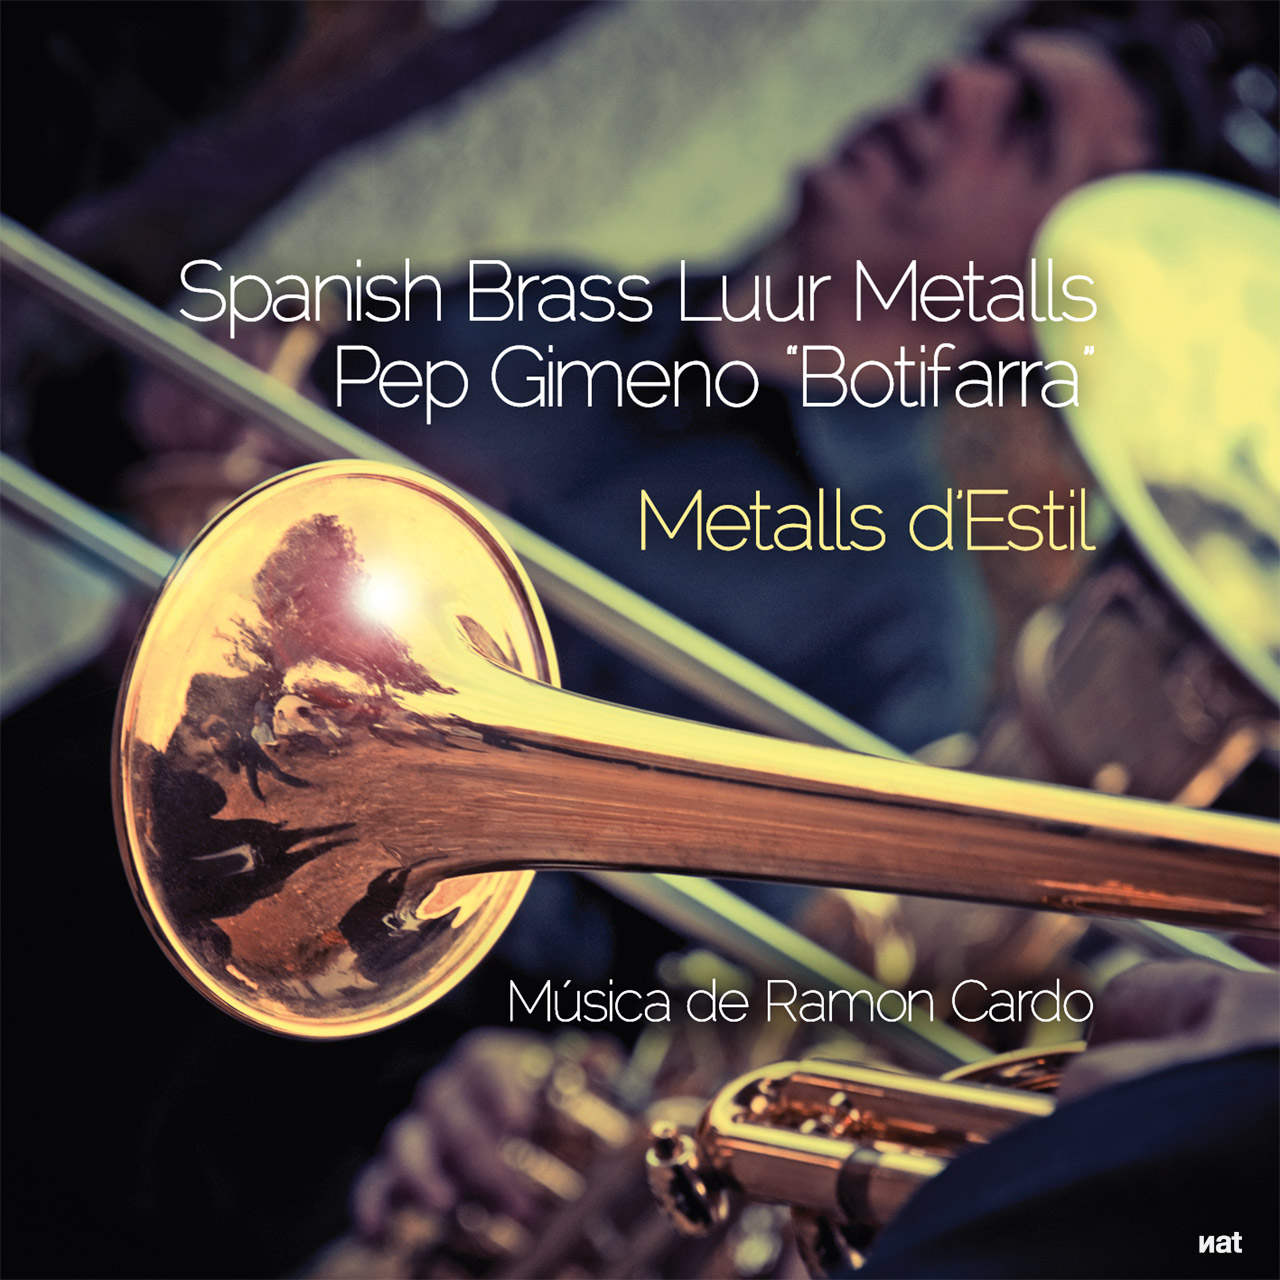 Fotografía y diseño para el disco CD 'Metalls d'Estil' de Spanish Brass y Pep Gimeno 'Botifarra'. Fotografía y diseño de Bernat Gutiérrez.